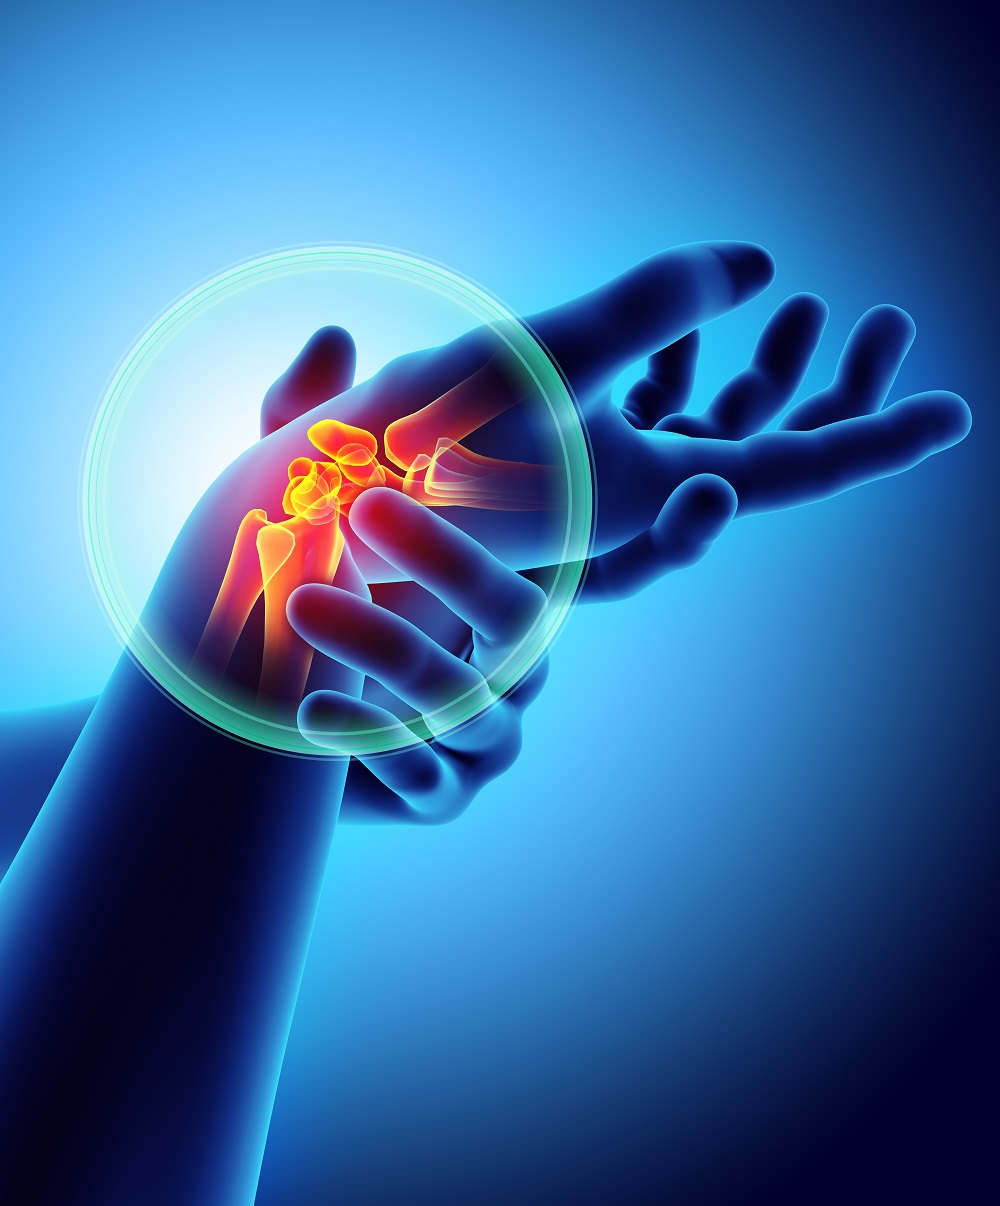 Canabisul ajută la durerea și inflamația artritei?